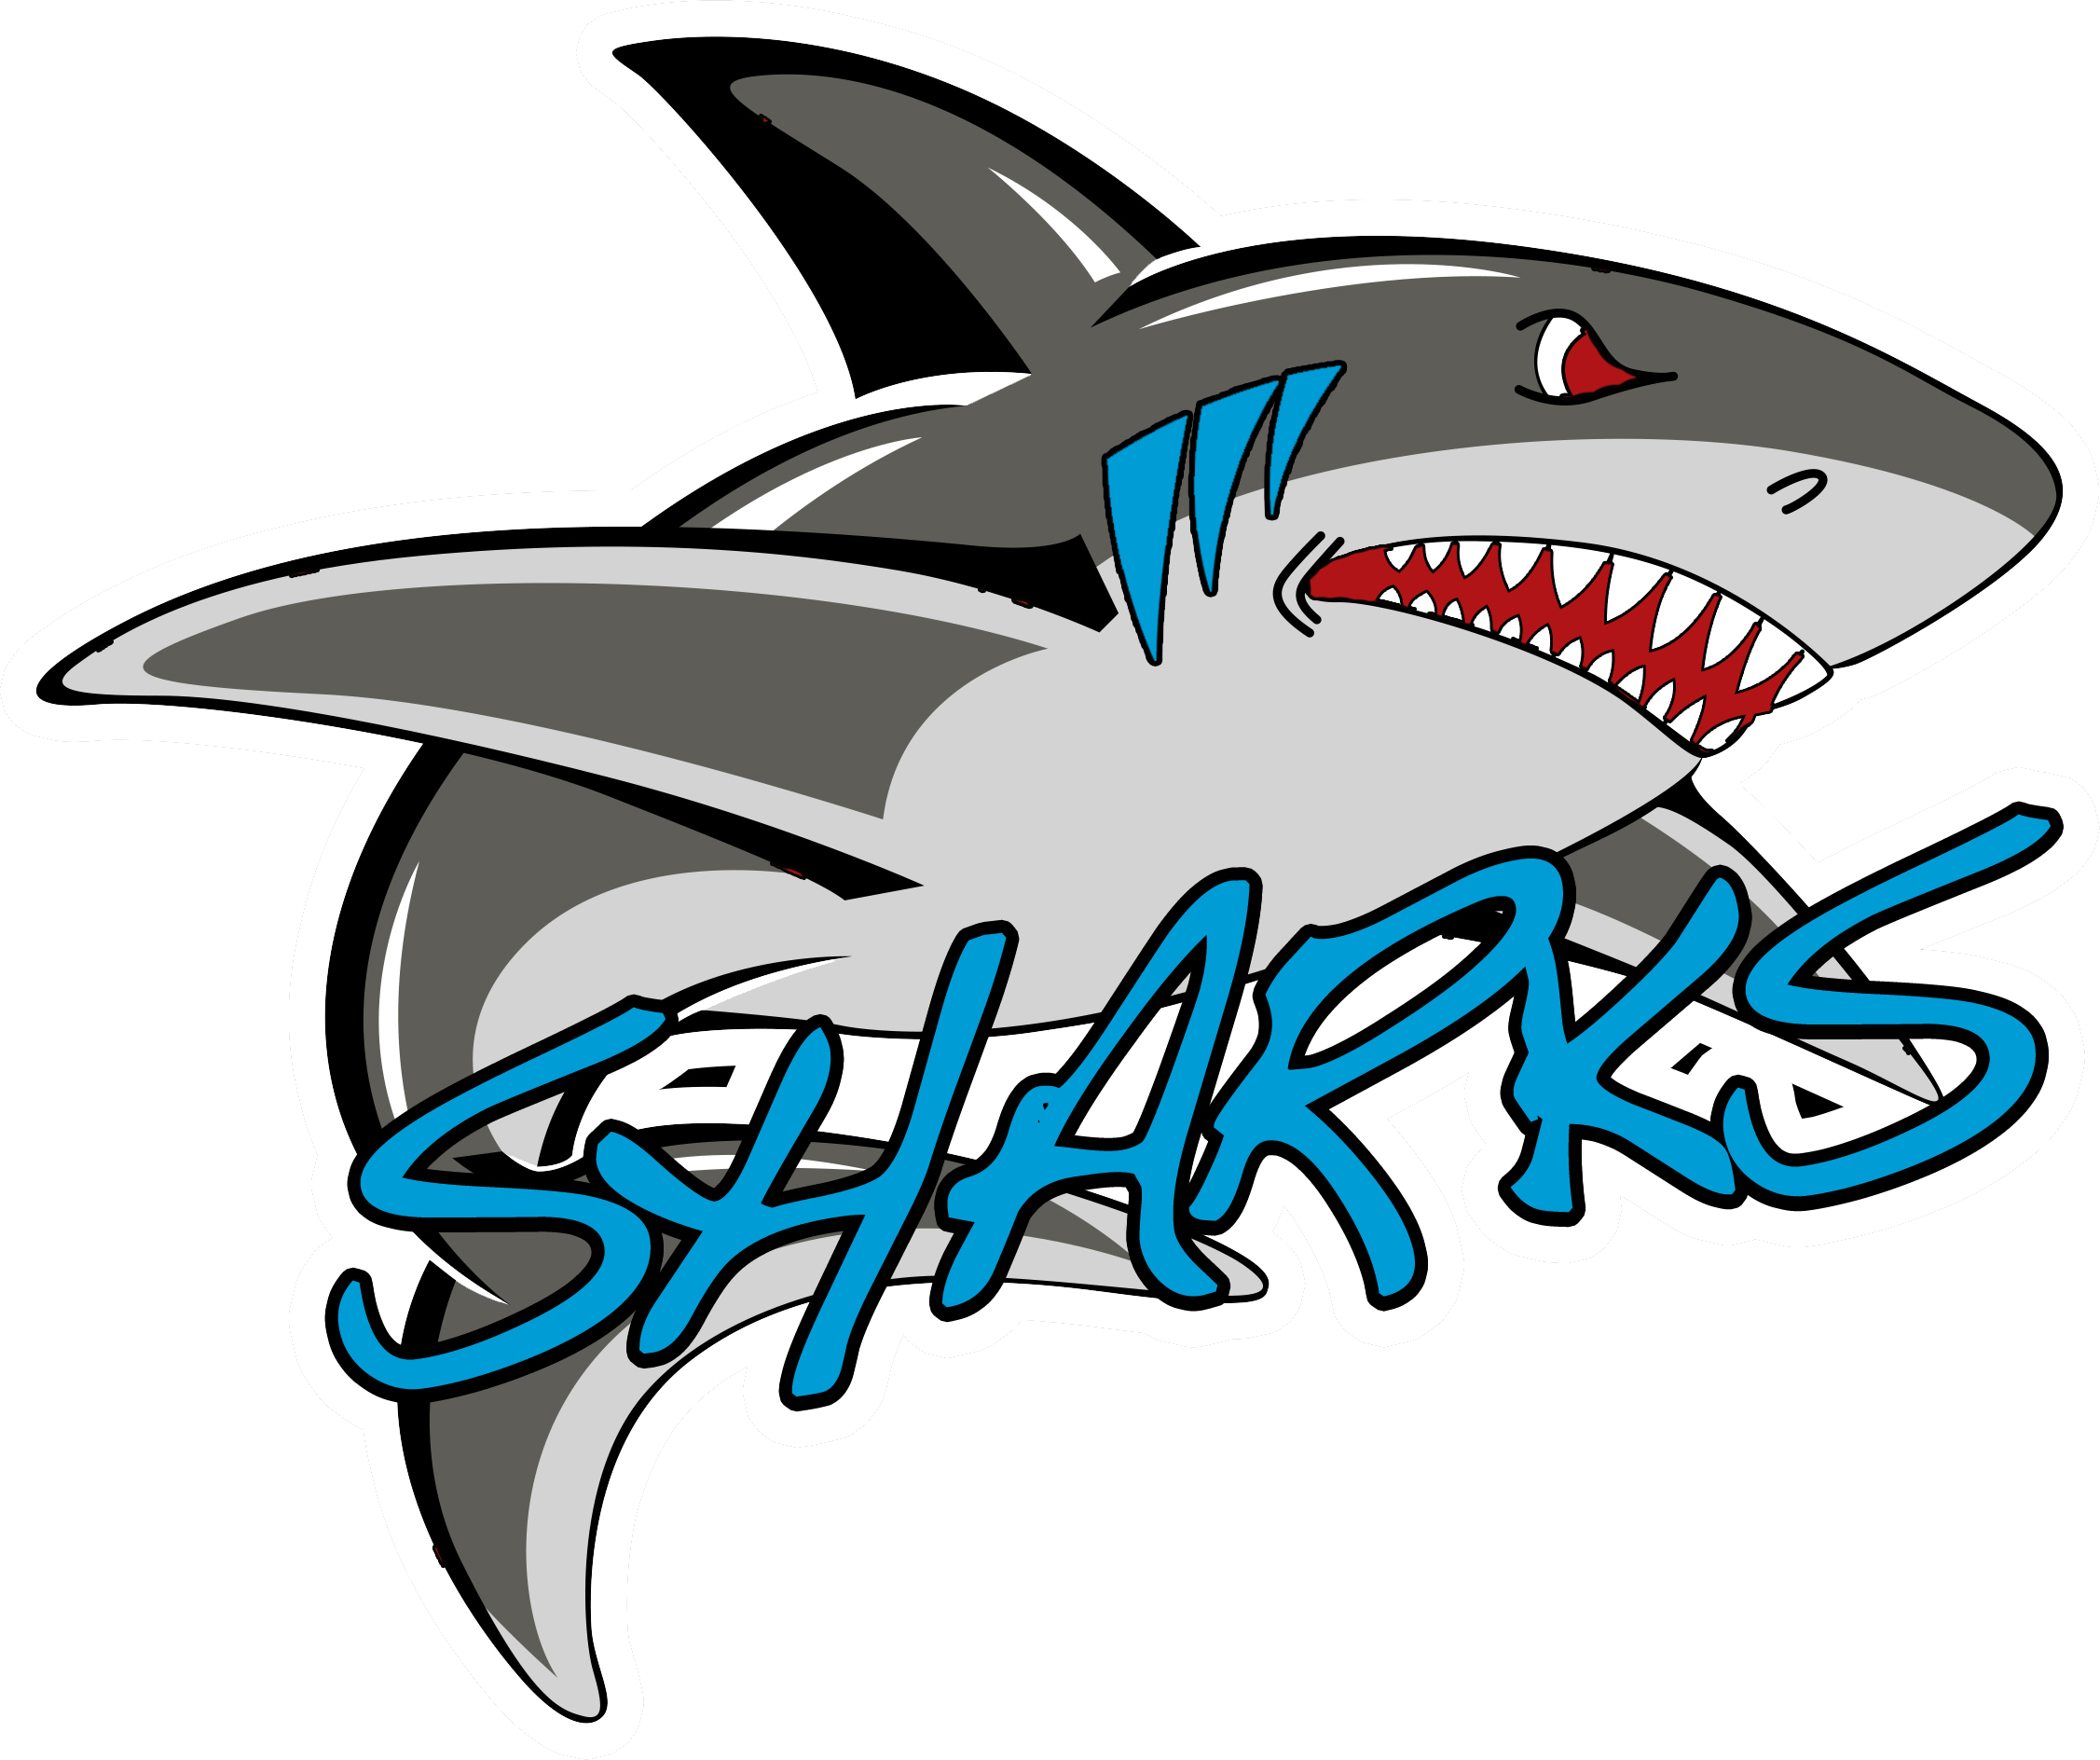 Dayton Sharks - Dayton Sharks (2253x1888)